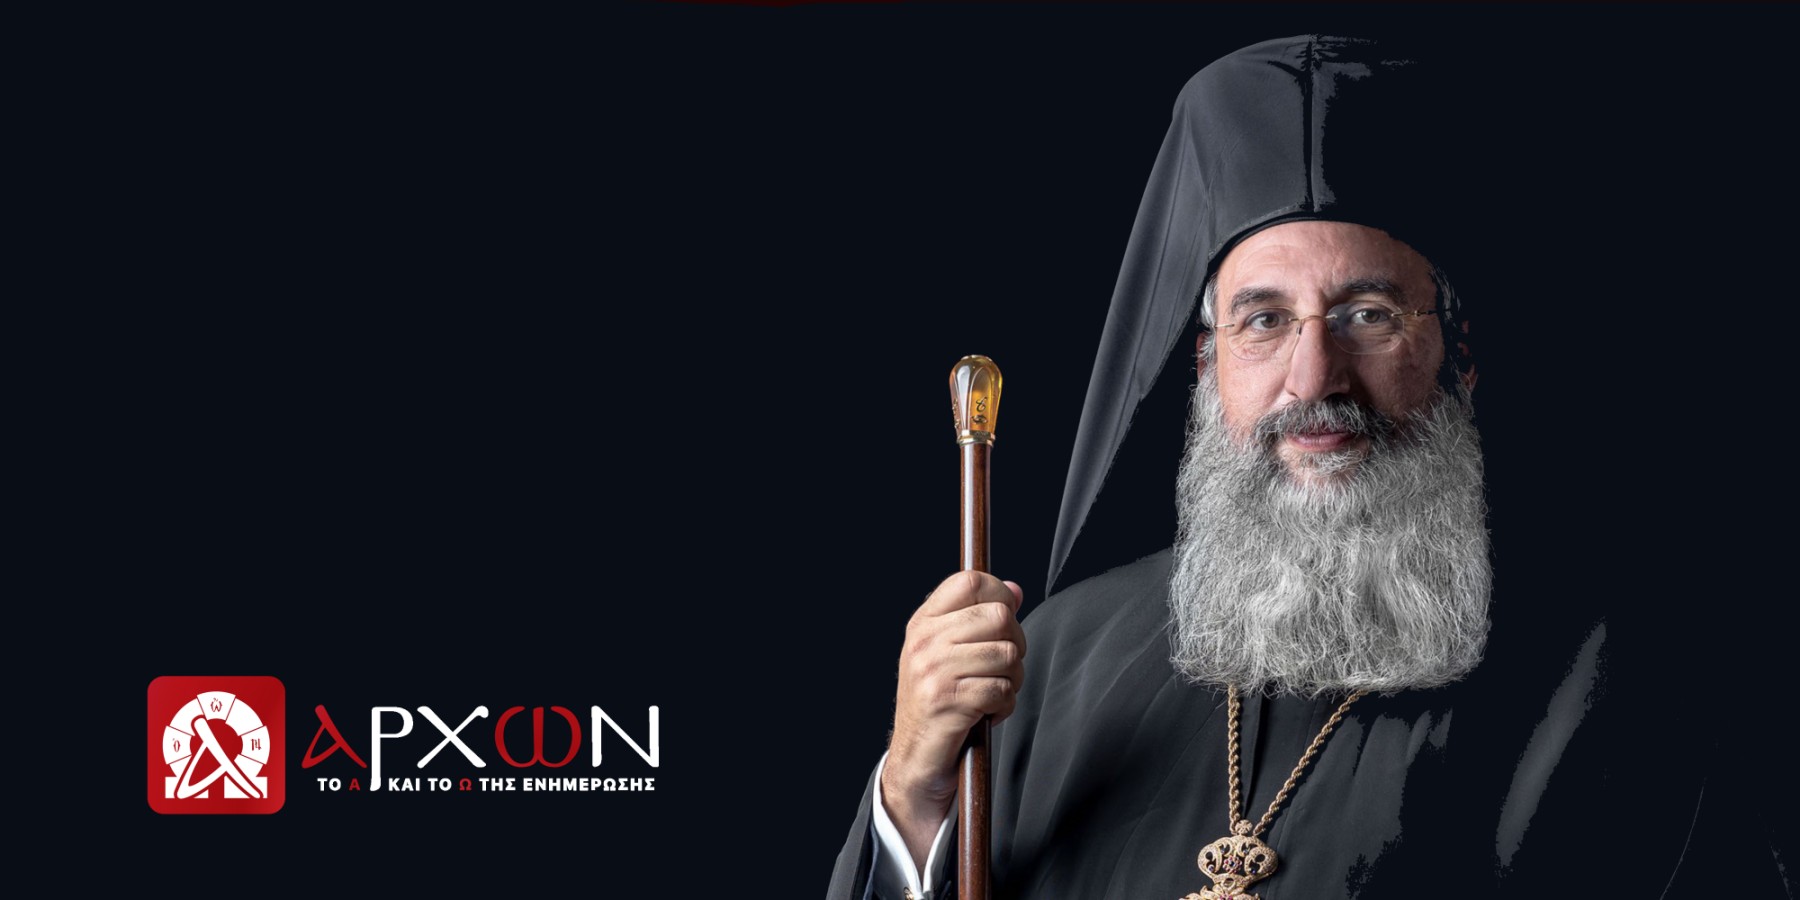 Στις 5 ή 12 Φεβρουαρίου η ενθρόνιση του νέου Αρχιεπισκόπου Κρήτης